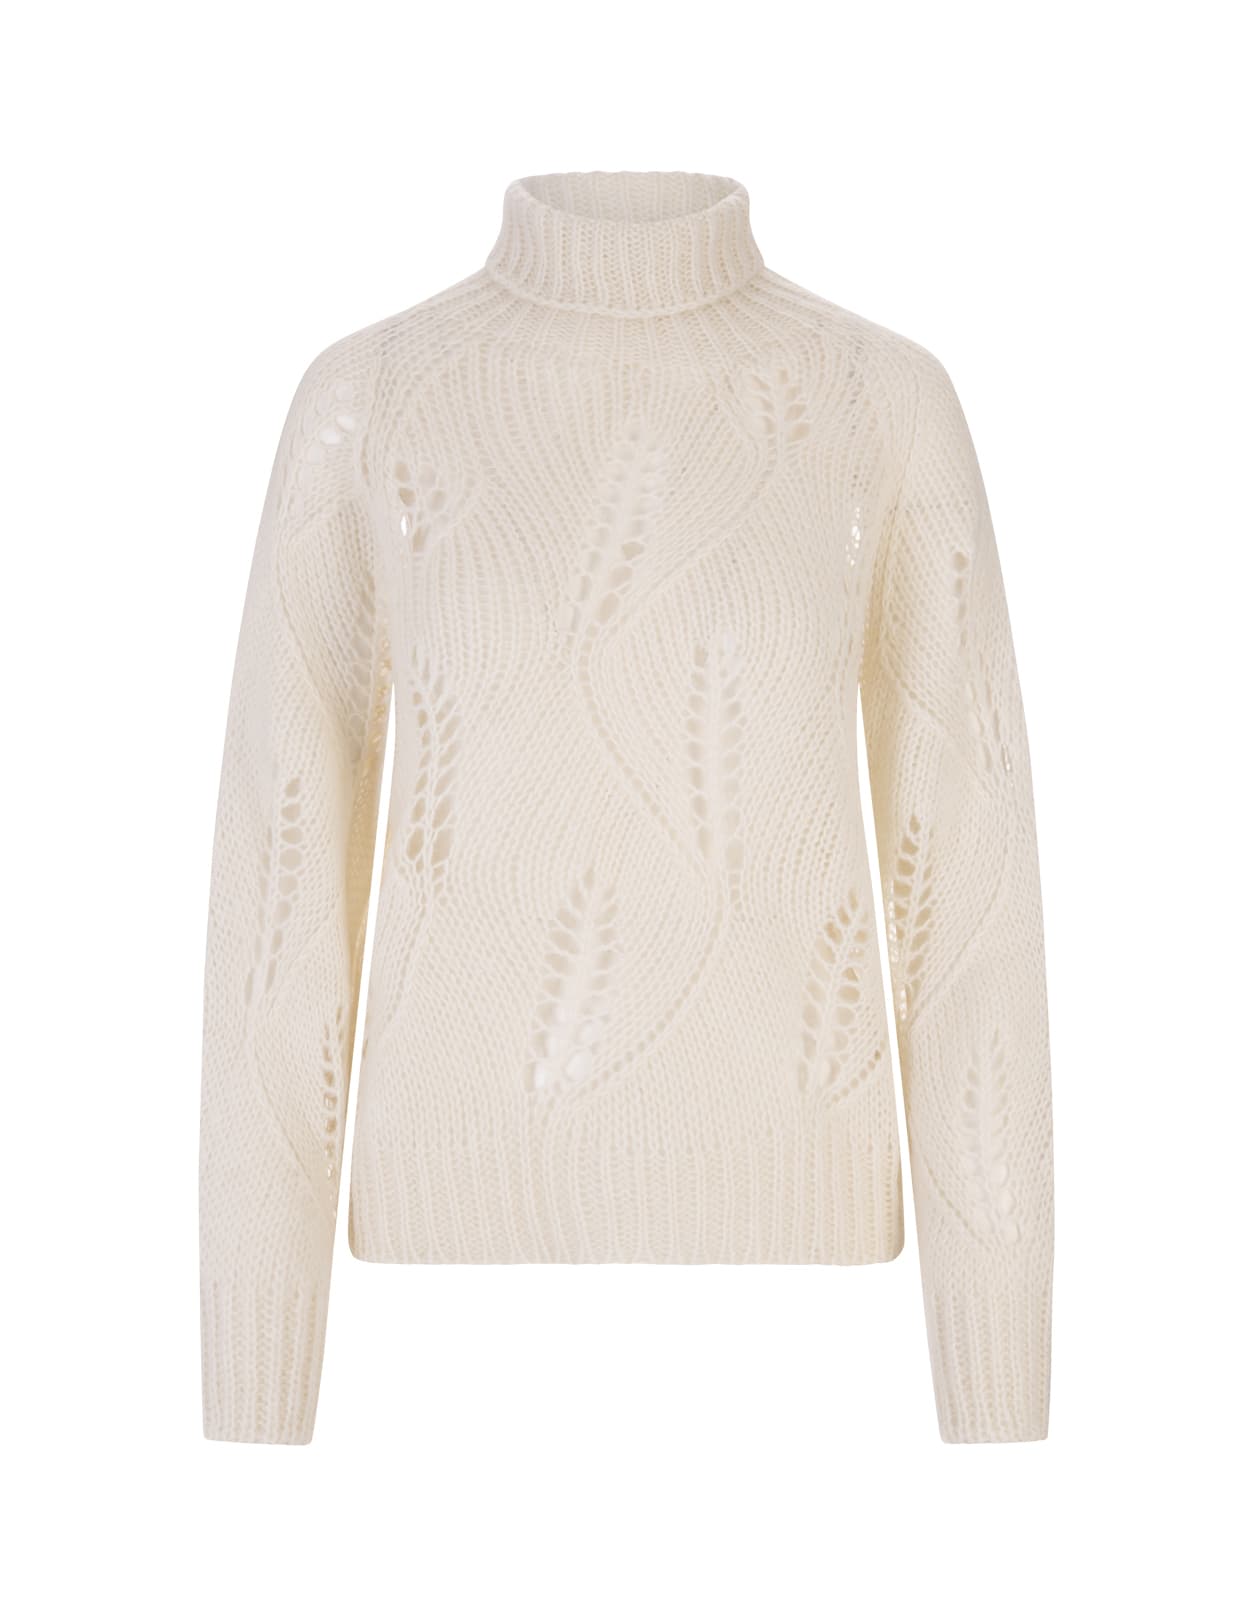 Fabiana Filippi Turtleneck Sweater In White Mohair Blend